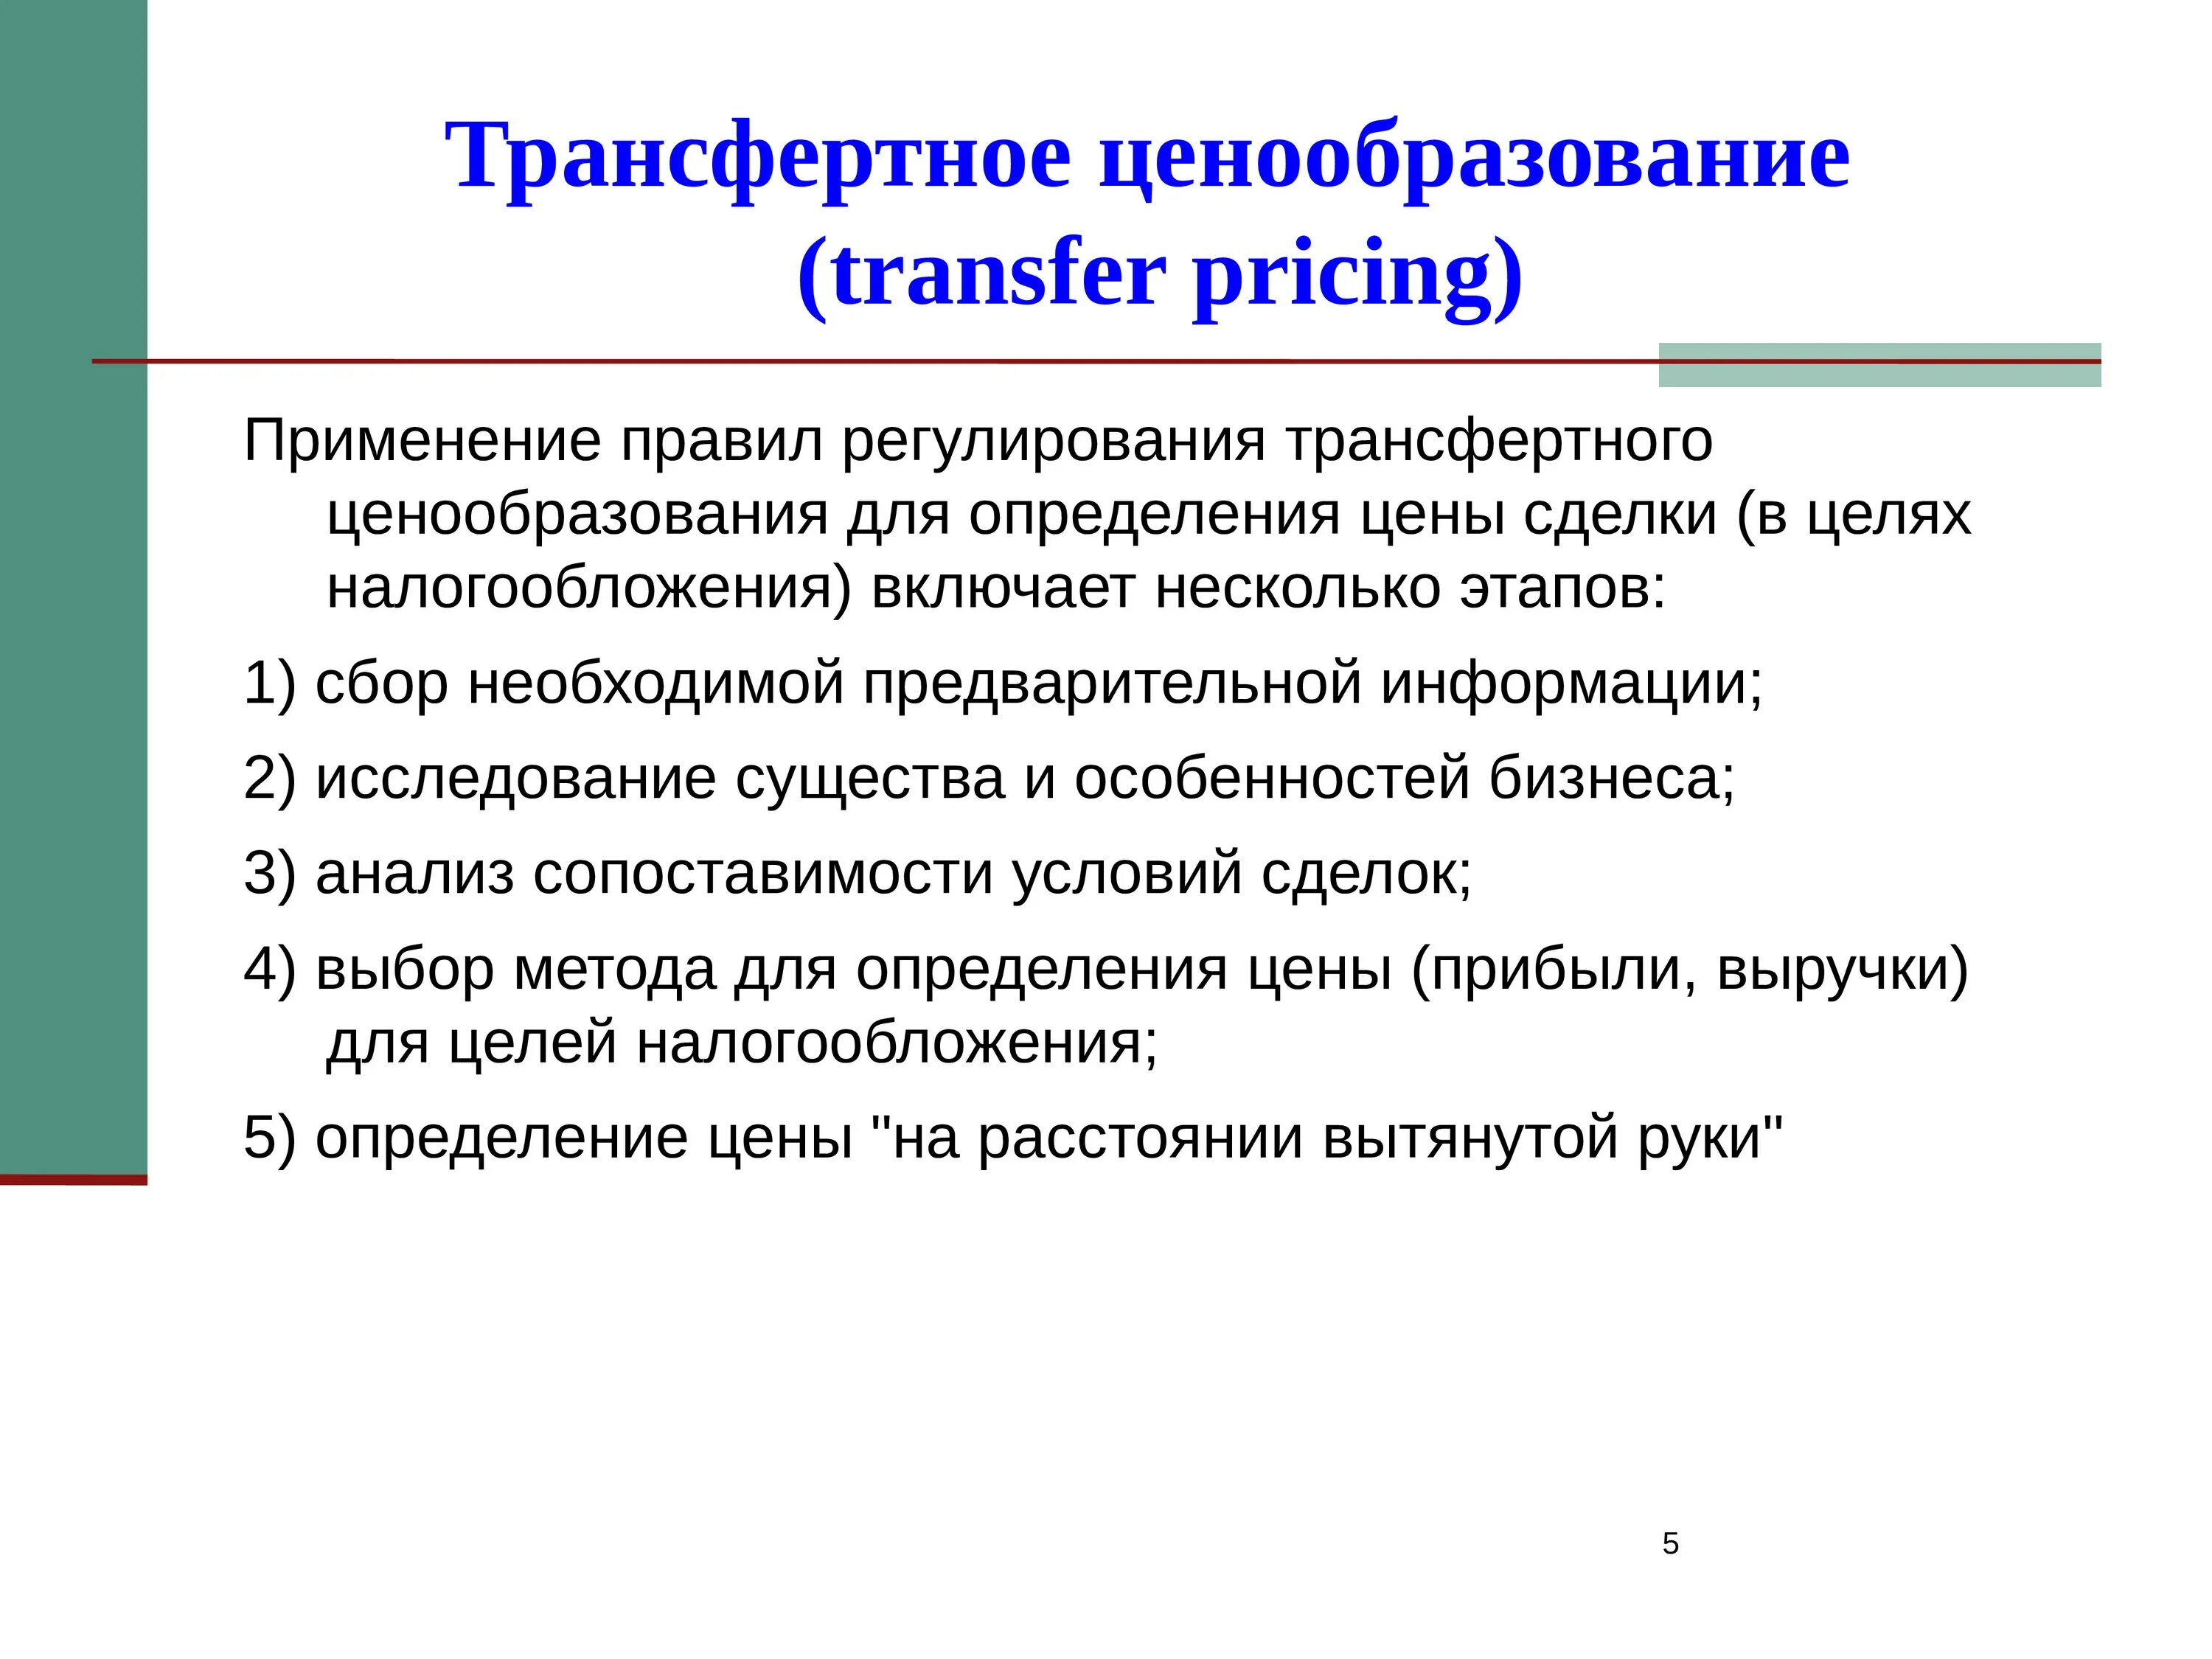 Трансфертное ценообразование. Методика трансфертного ценообразования. Трансфертное ценообразование пример. Схема трансфертного ценообразования. Решение по ценообразованию